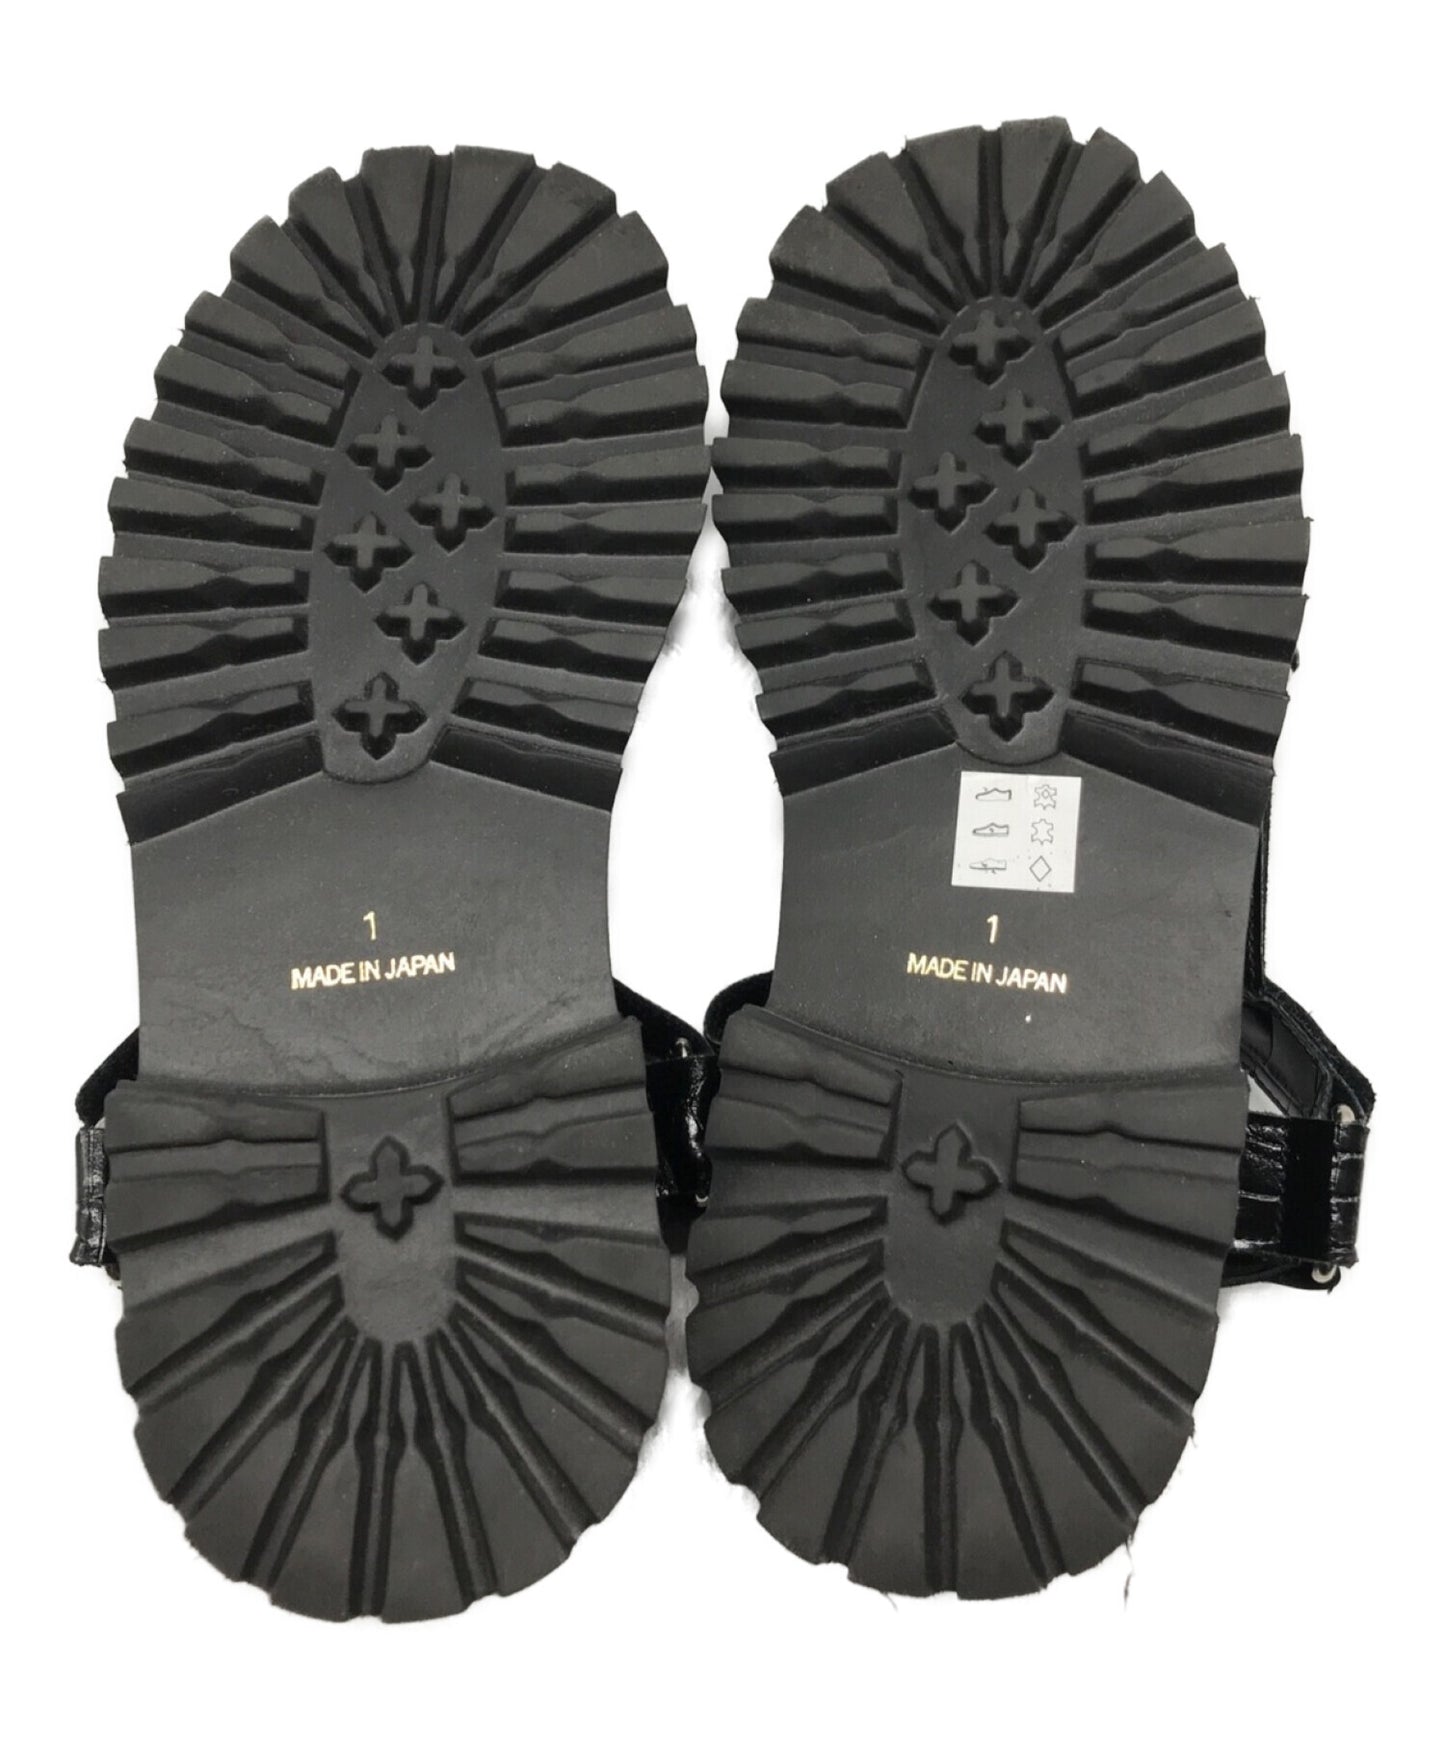 [Pre-owned] JUNYA WATANABE COMME des GARCONS Platform Sandals